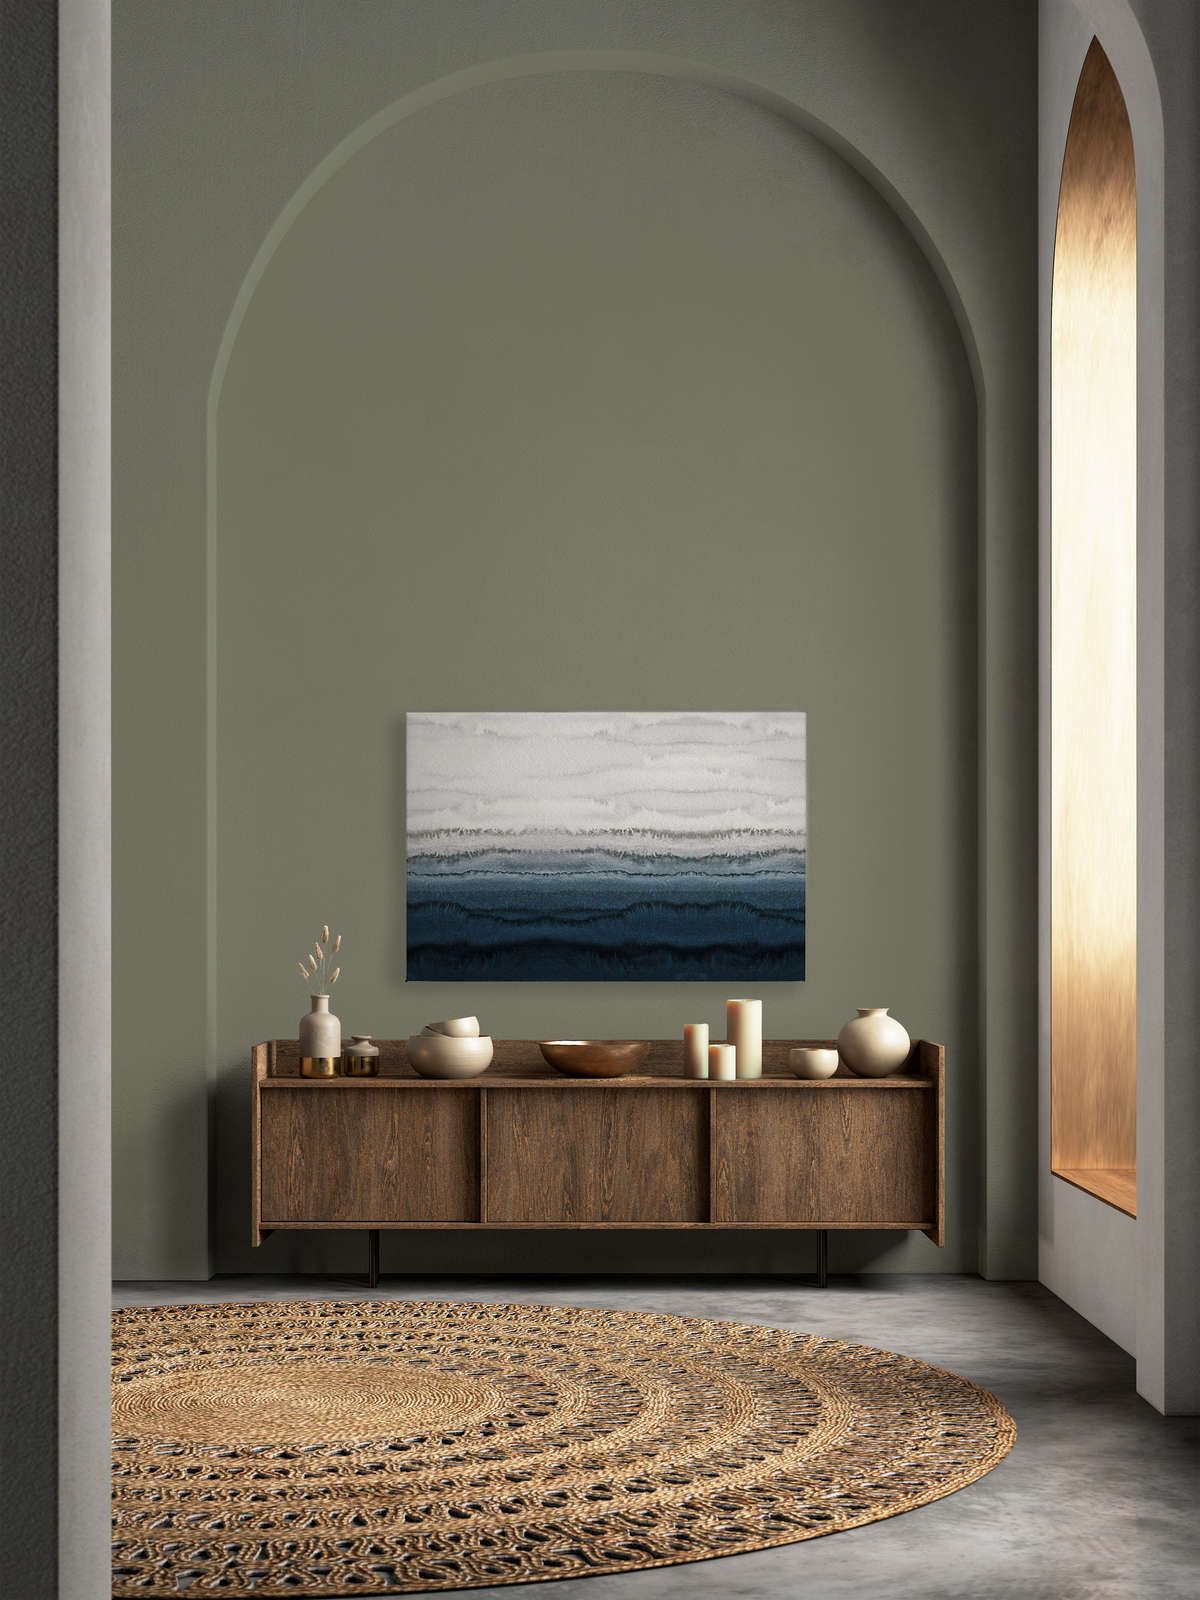             Toile Marées style aquarelle minimaliste - 1,20 m x 0,80 m
        